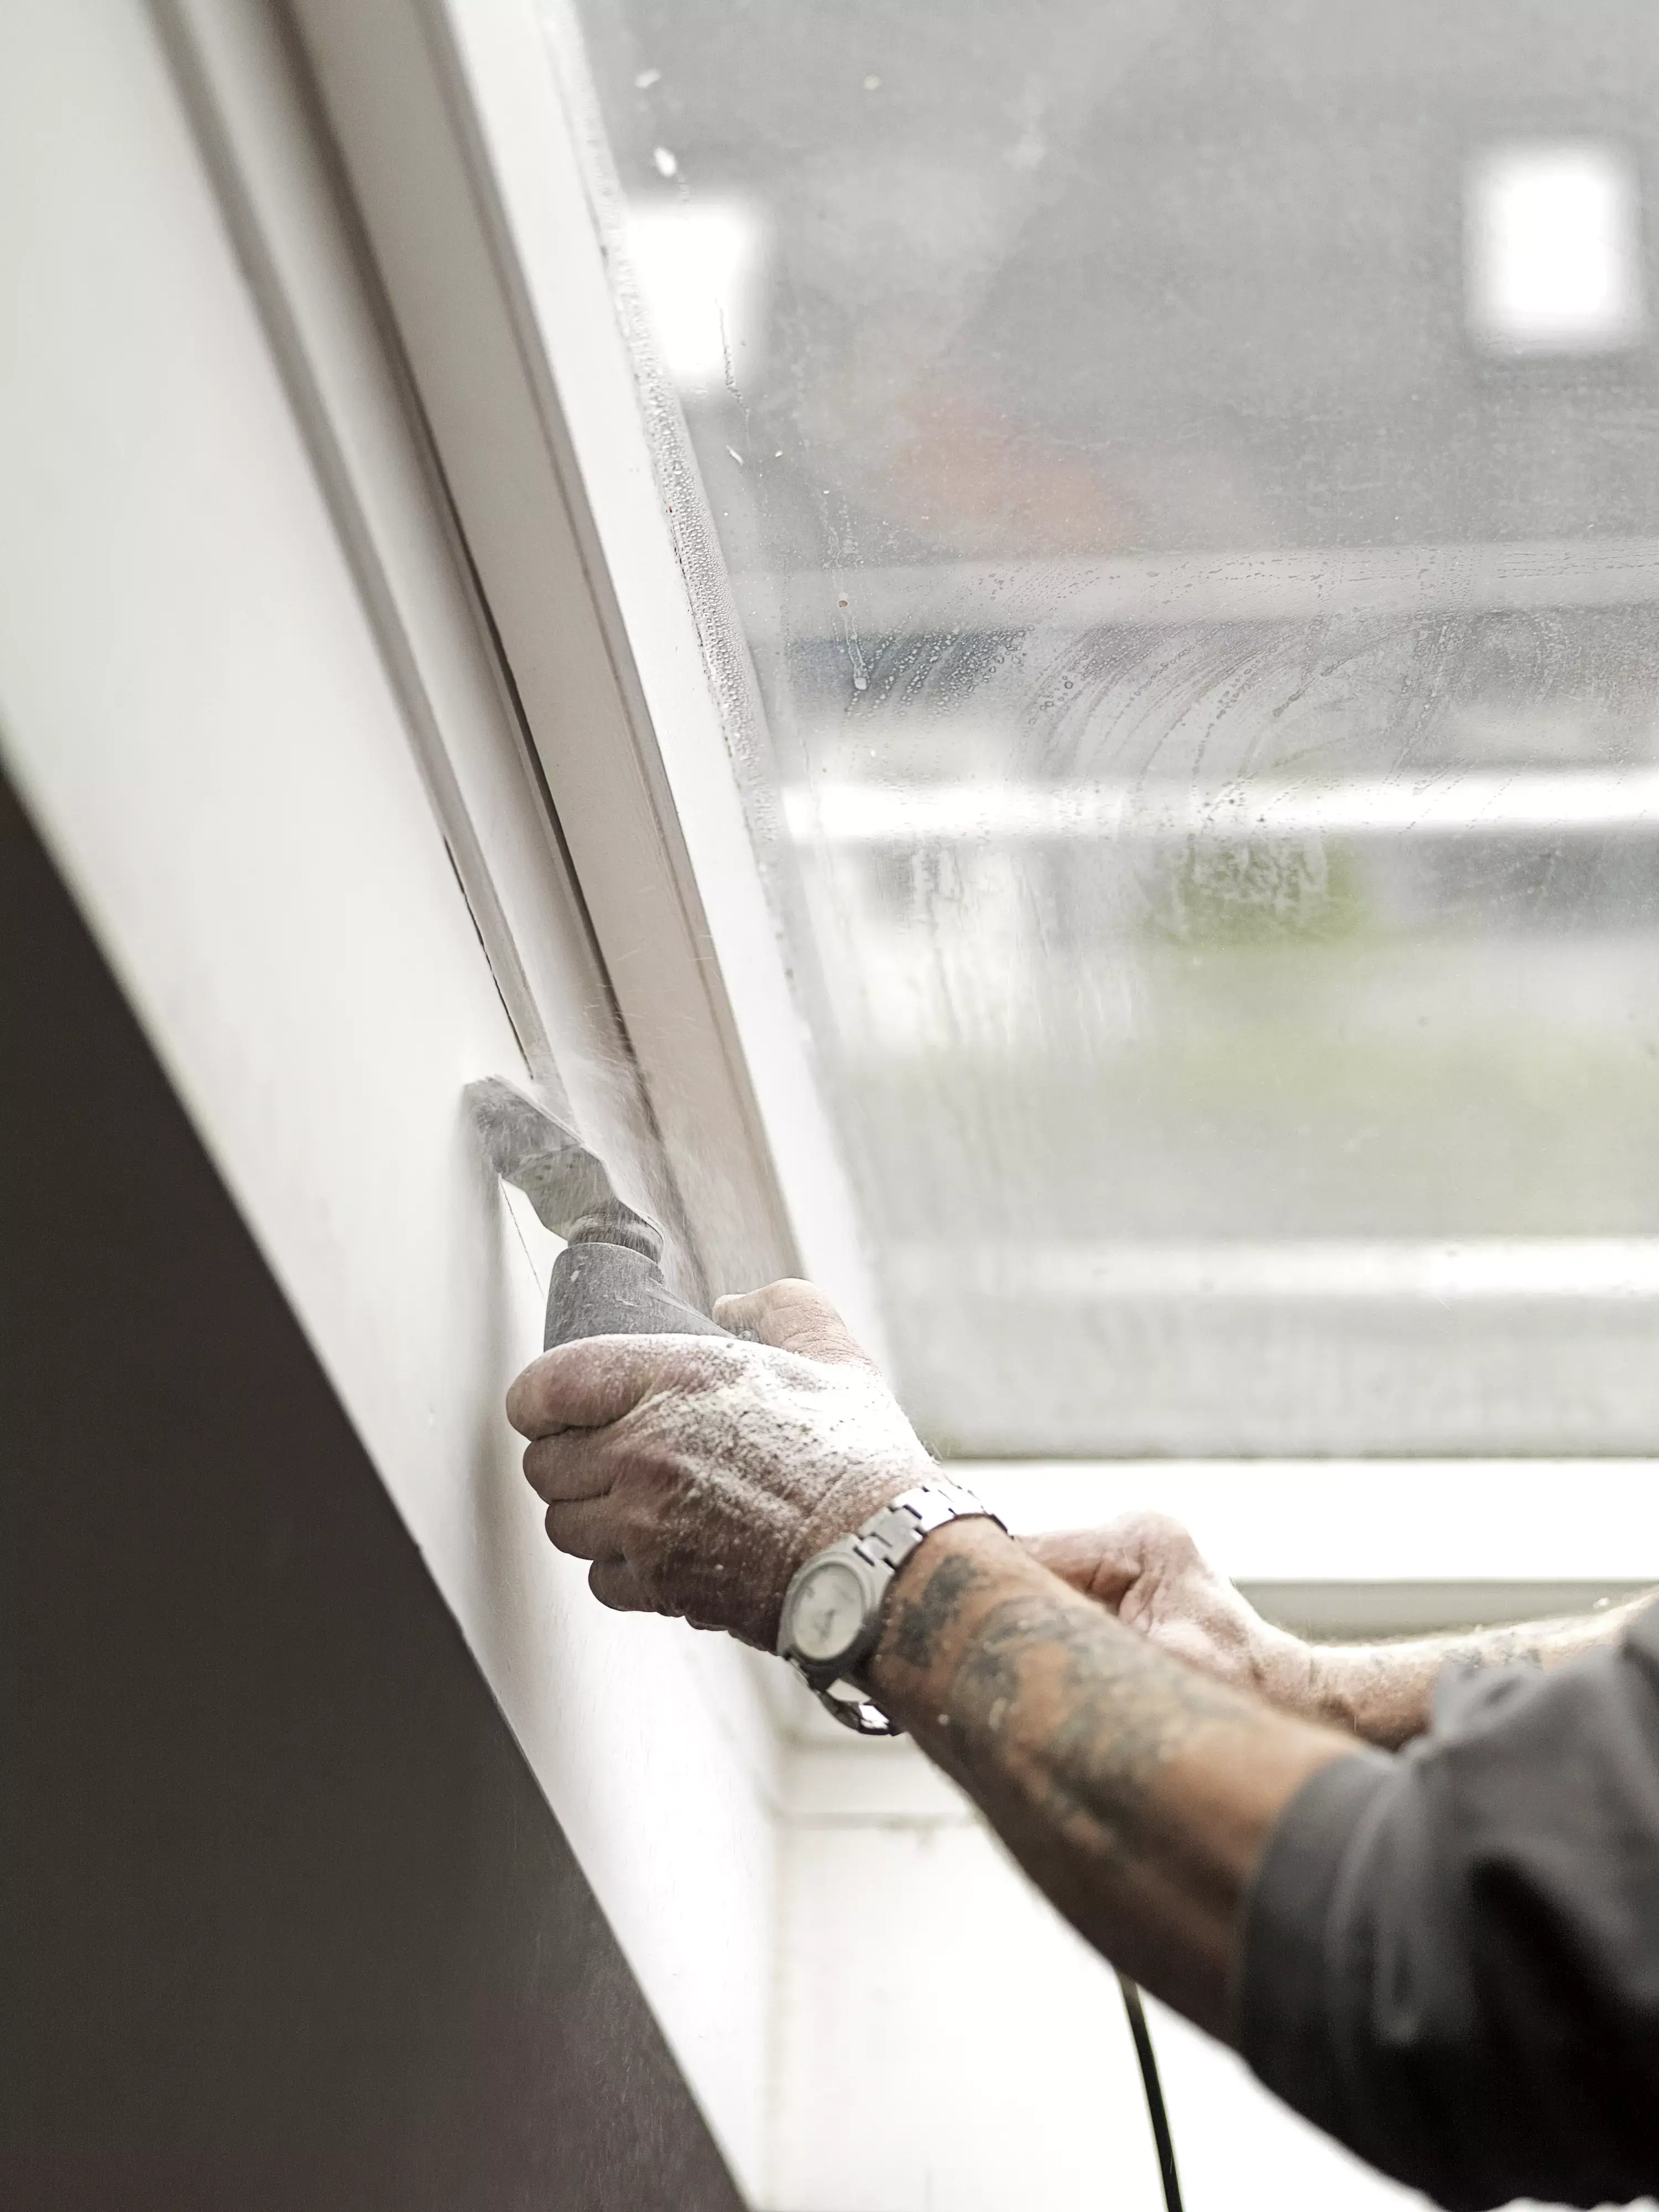 Une main applique du mastic pour sceller le bord d’une fenêtre Velux, illustrant une tâche d’entretien courante pour améliorer l’isolation et prévenir les fuites.